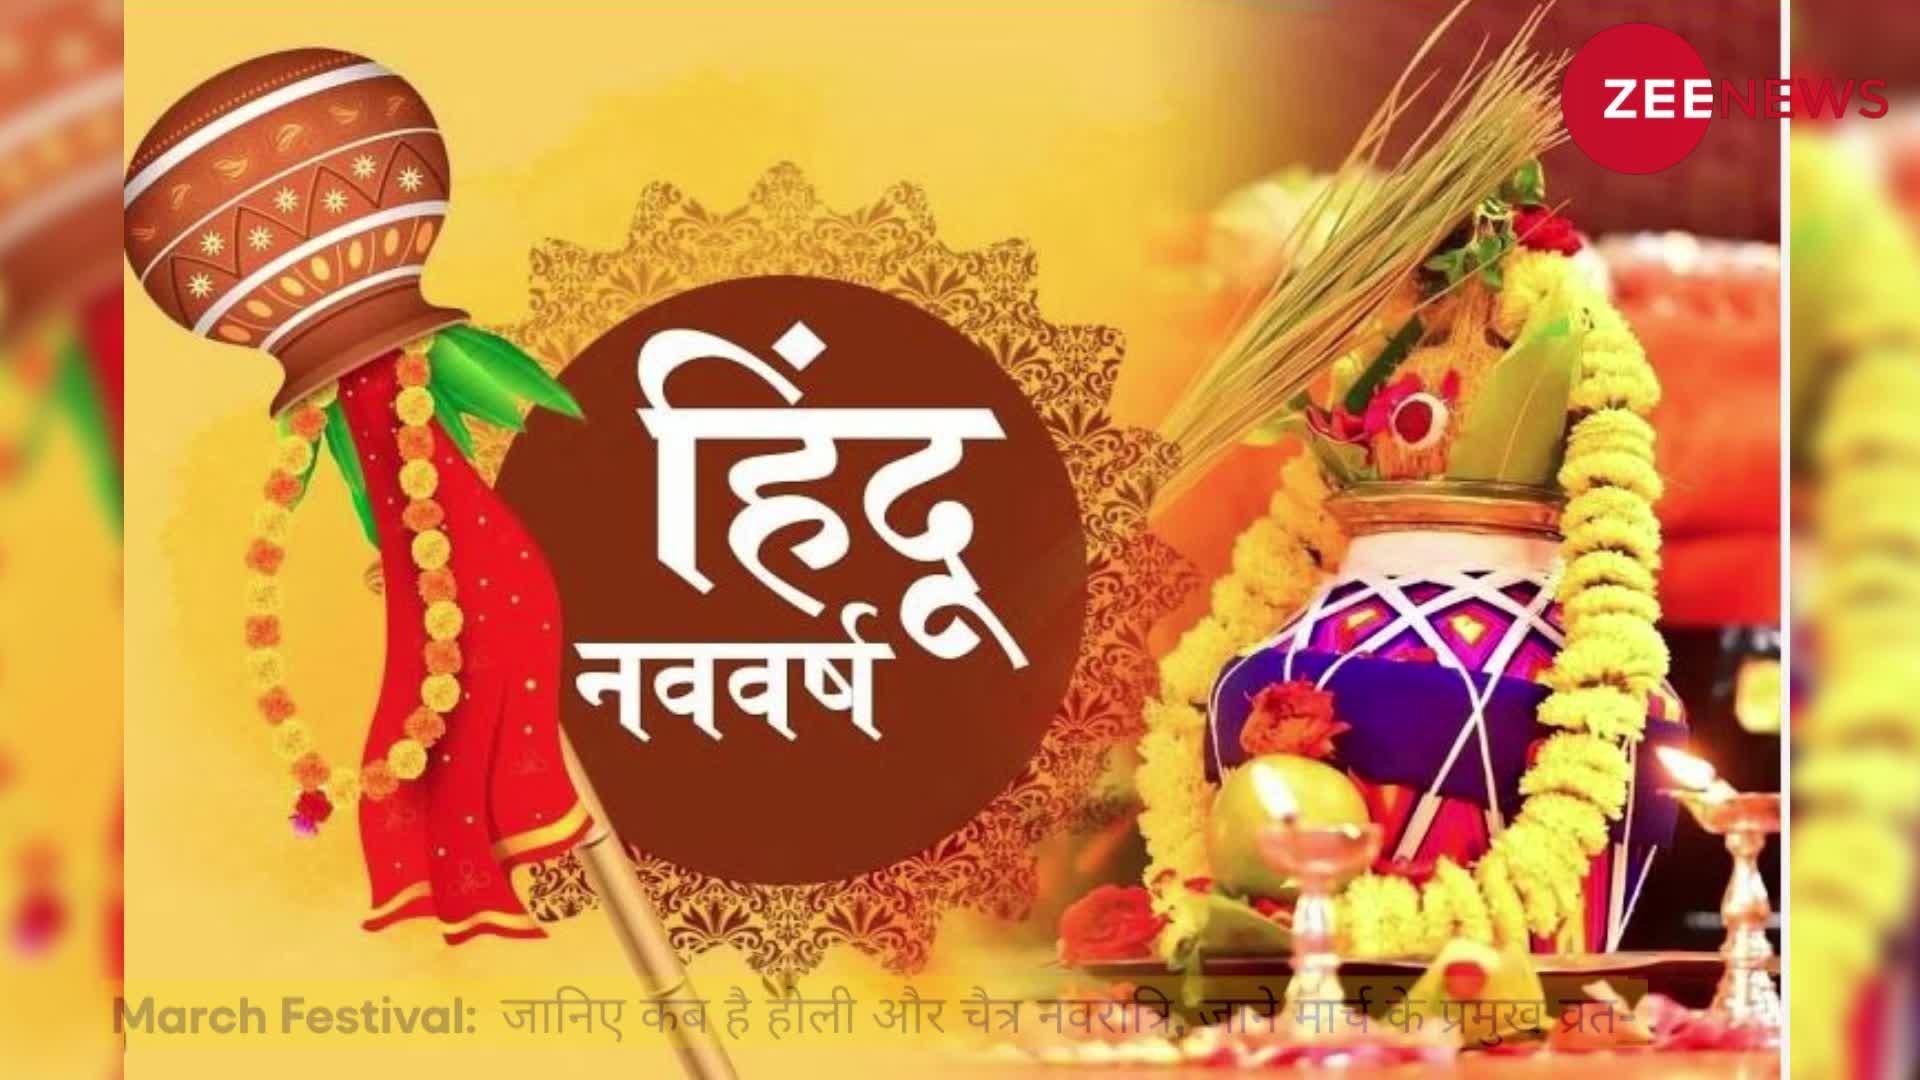 March Festival: जानिए कब है होली और चैत्र नवरात्रि, देखे मार्च के प्रमुख व्रत-त्योहारों की लिस्ट